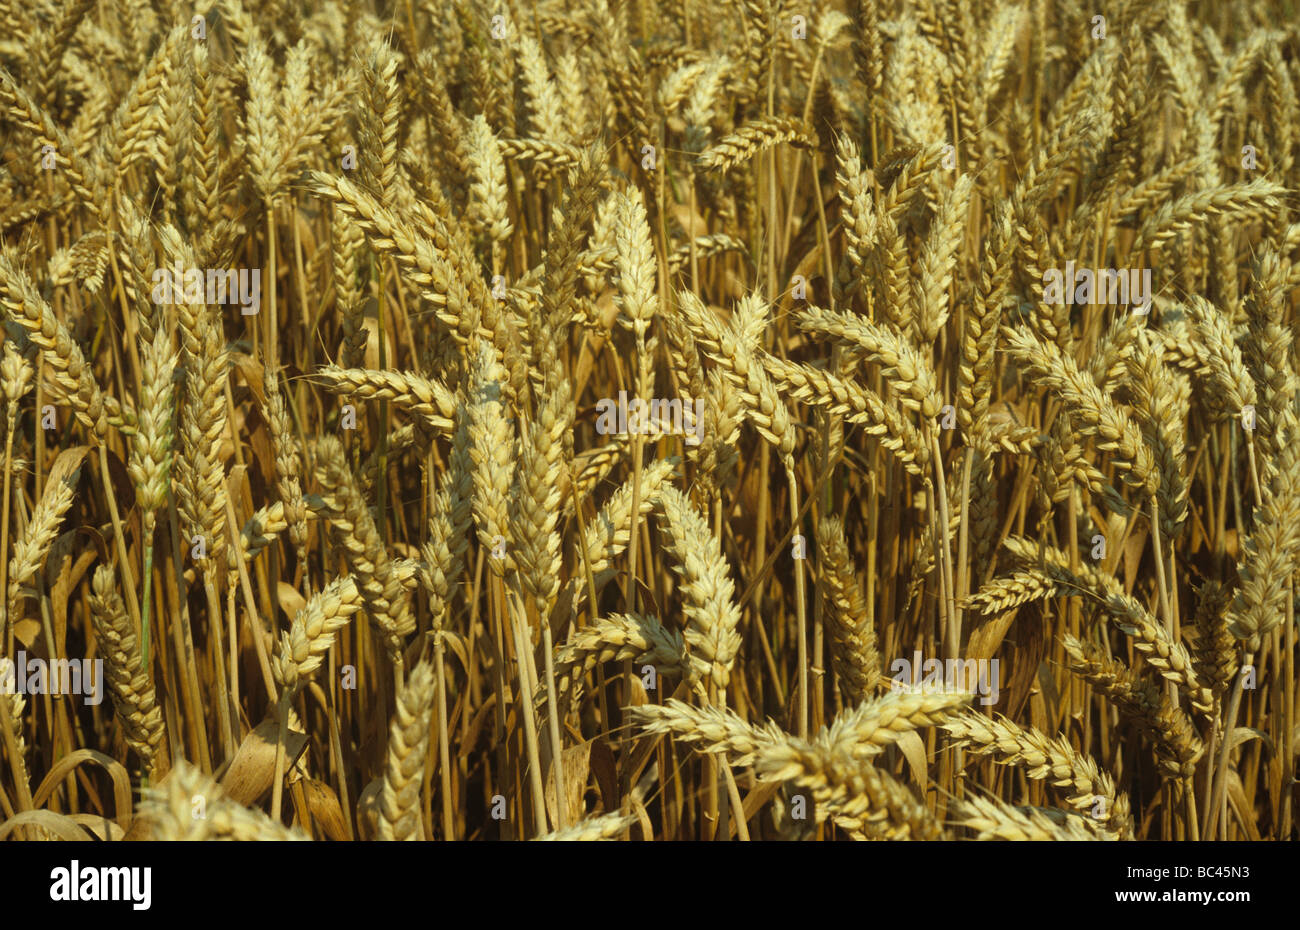 Un cultivo maduro de trigo de invierno Foto de stock